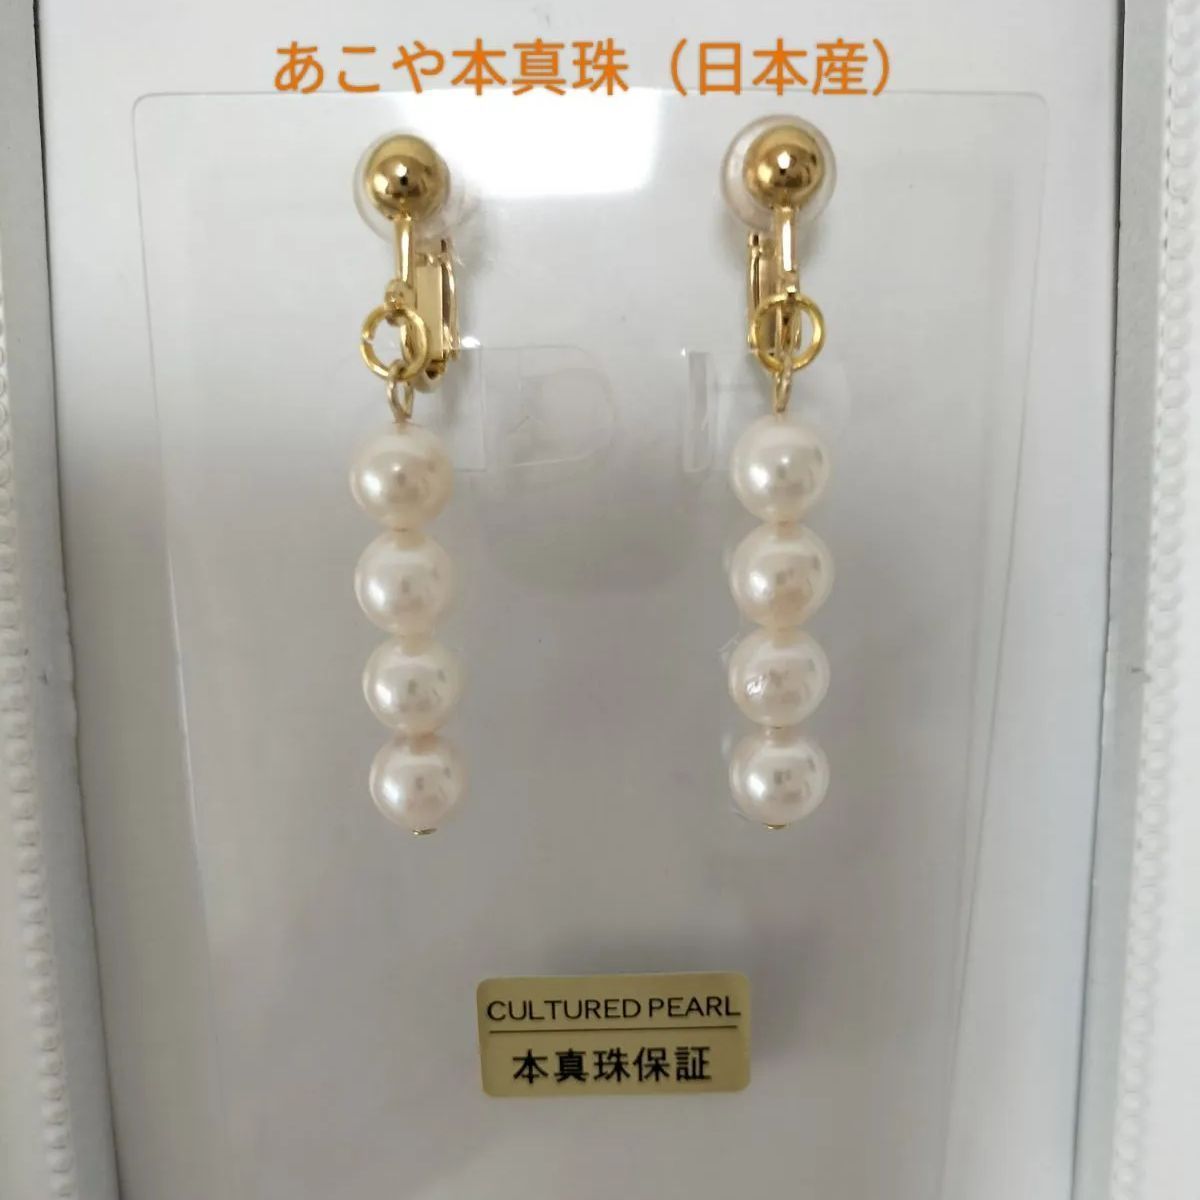 あこや本真珠（日本産）のネジバネ式イヤリング☆ - ピアジェ - メルカリ